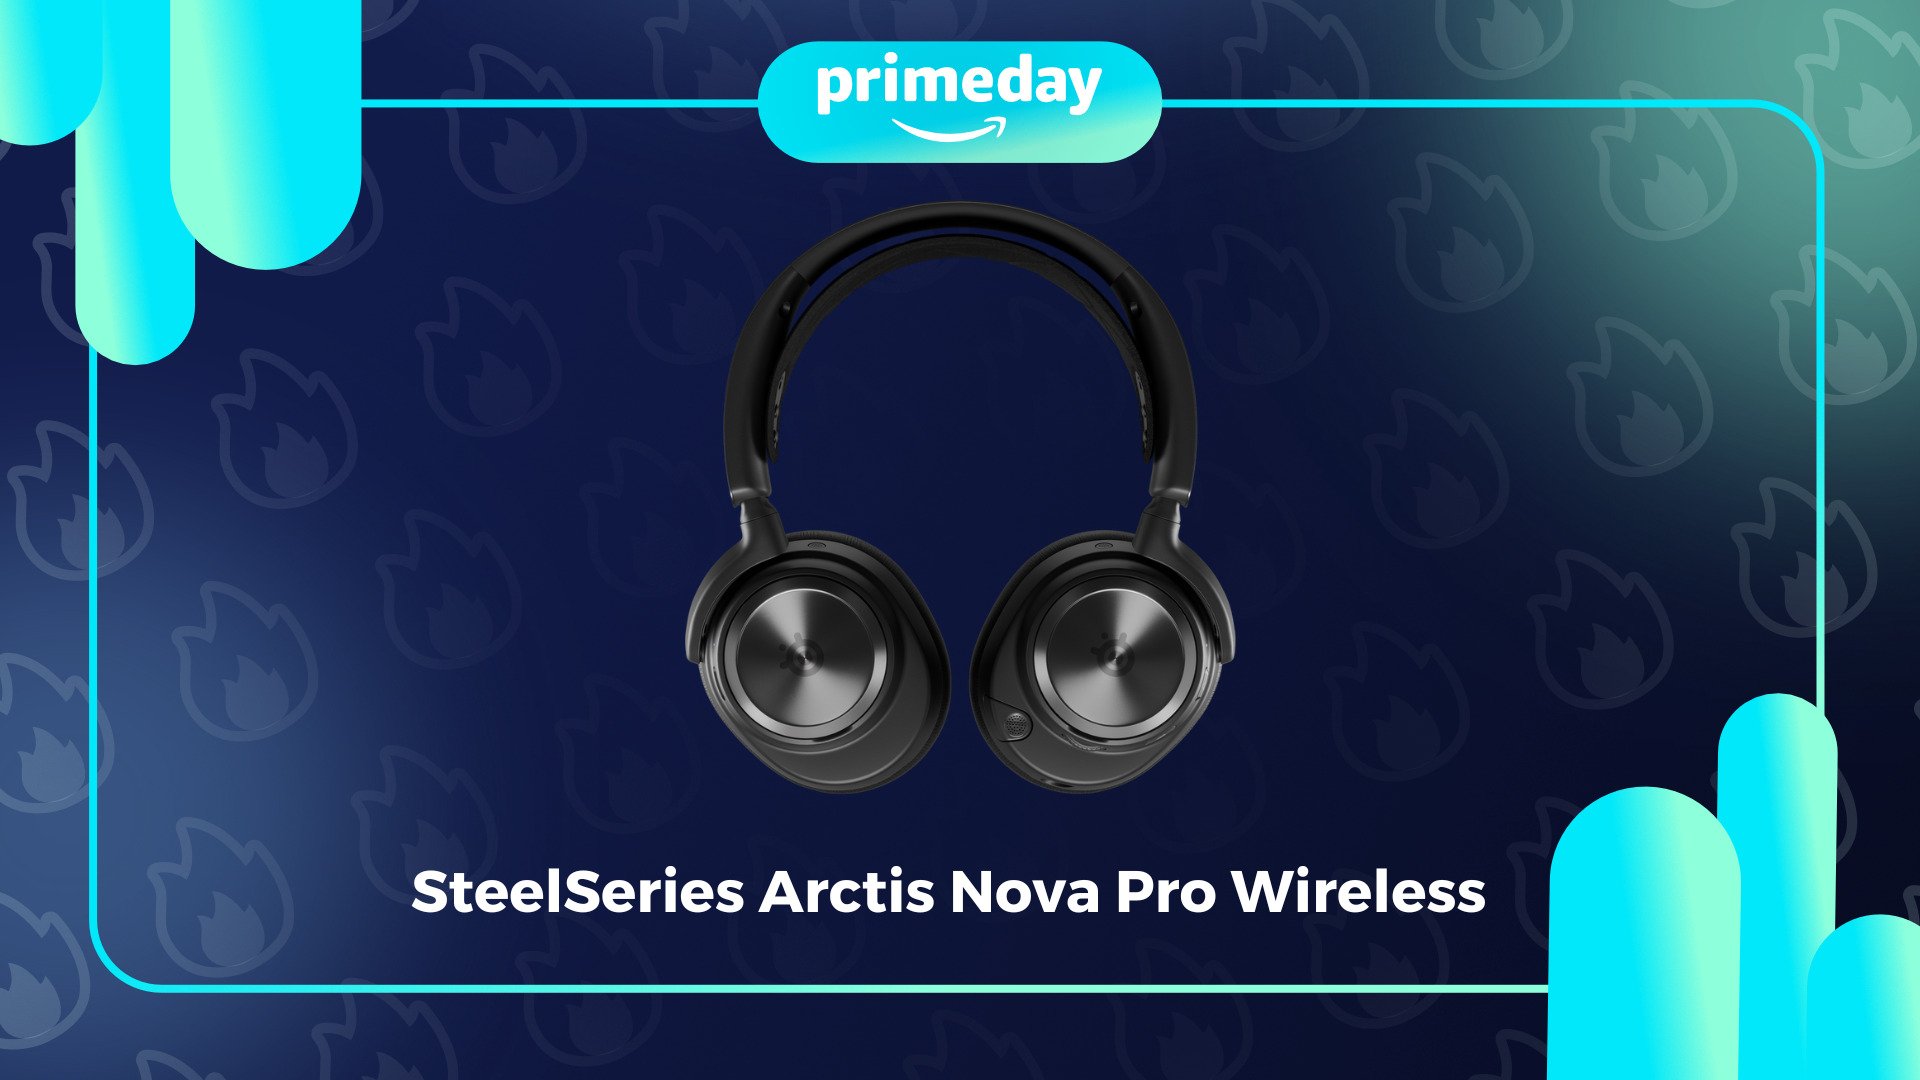 Le casque SteelSeries Arctis Nova Pro Wireless passe sous la barre